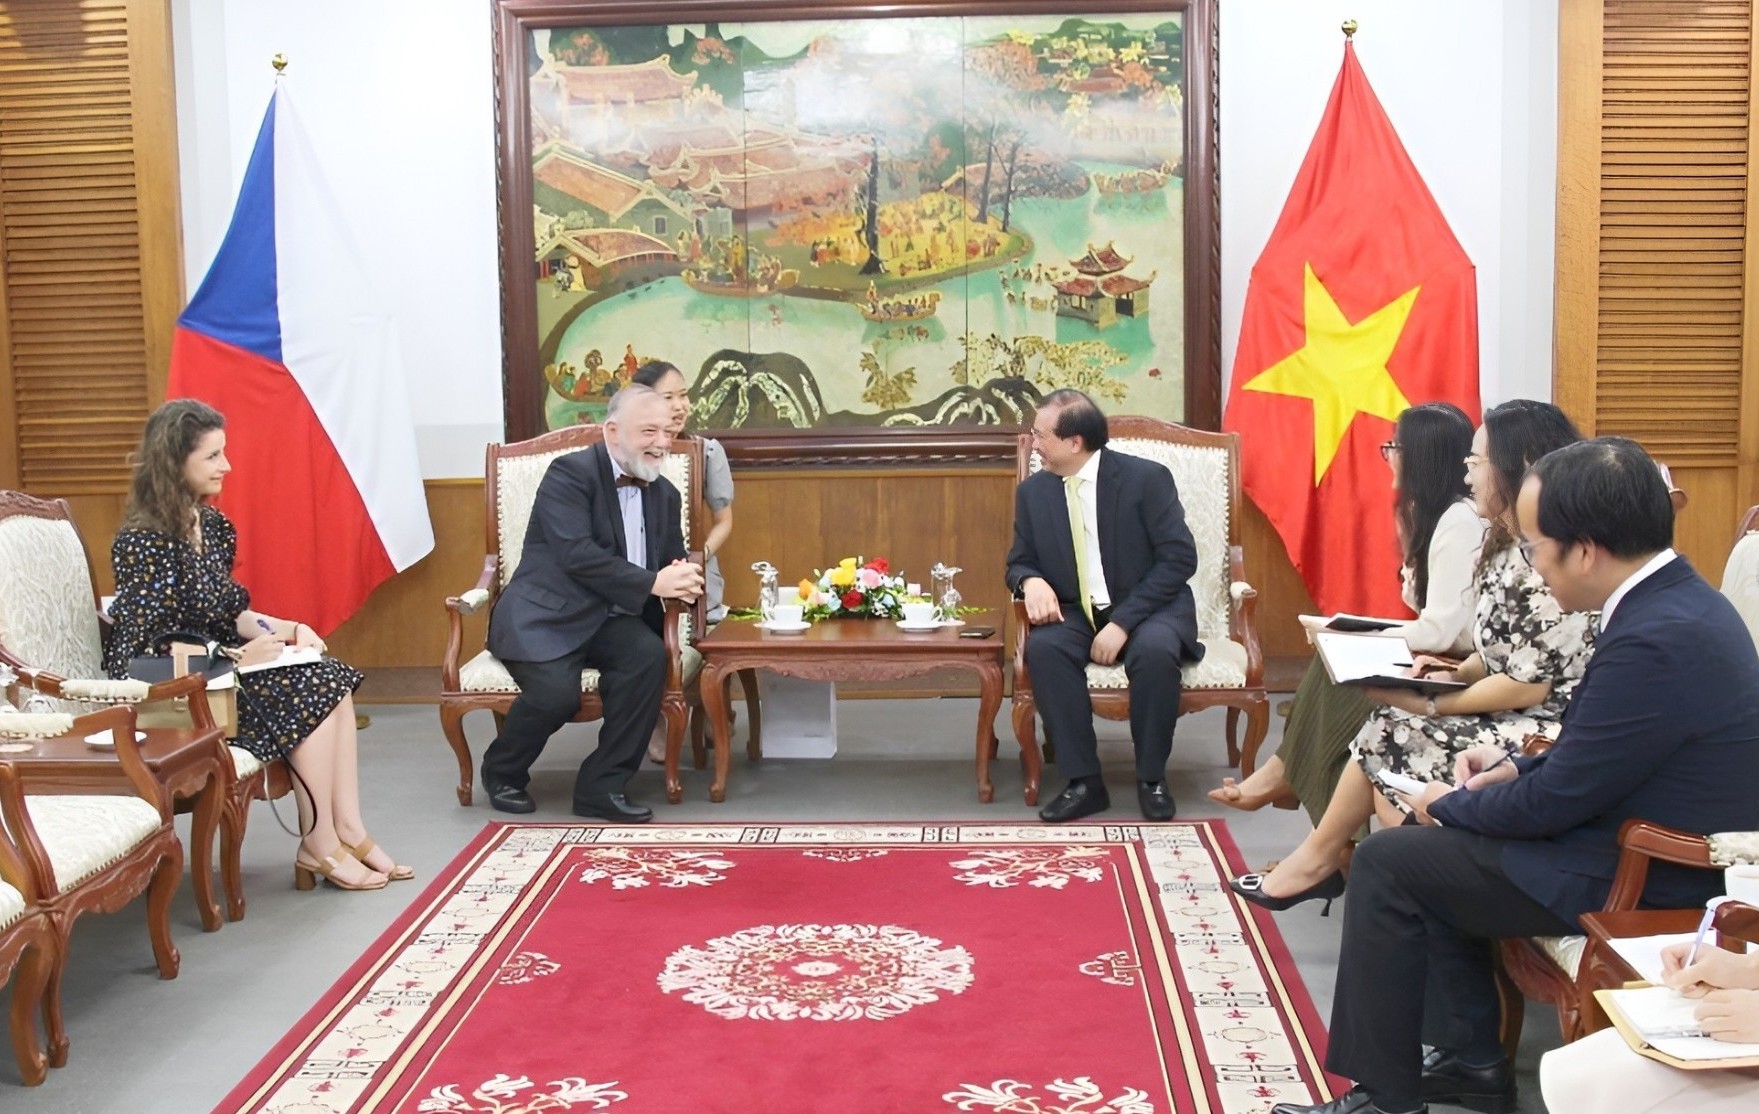 Thúc đẩy hợp tác Việt Nam - Cộng hoà Séc thông qua cầu nối văn hoá - Ảnh 1.